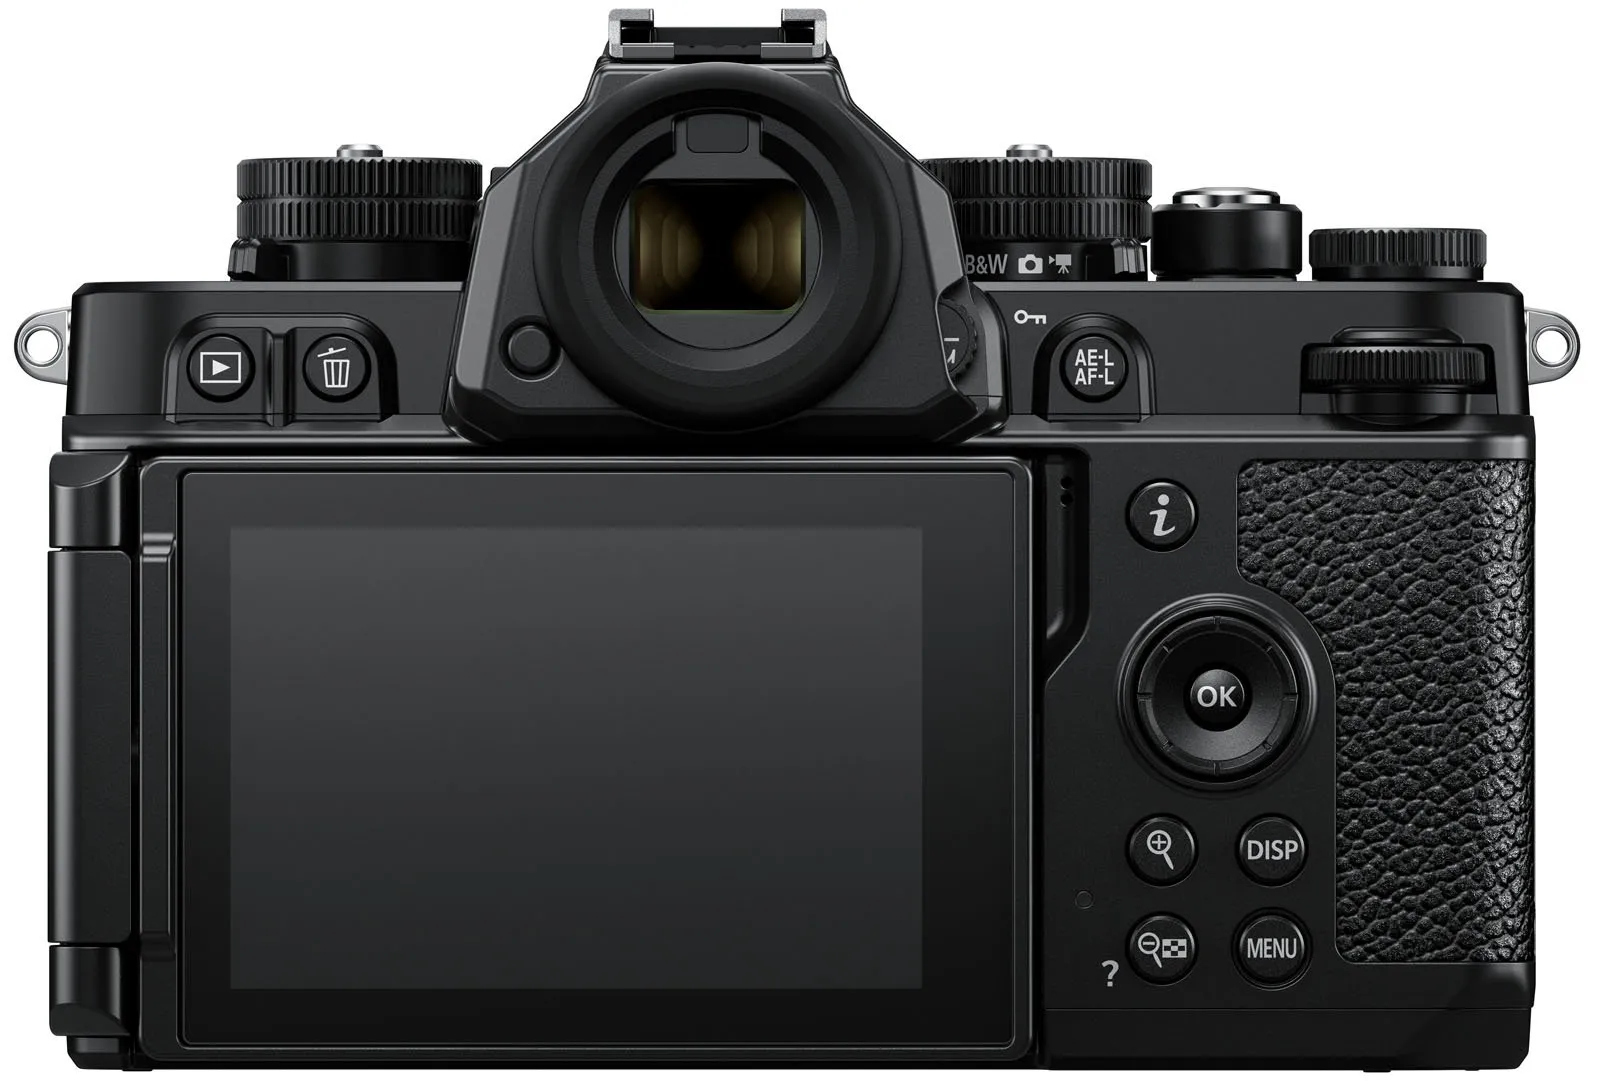 Nikon ra mắt máy ảnh Nikon Zf với thiết kế cổ điển, tích hợp lấy nét AF nhiều chủ thể và cảm biến full frame 24.5MP